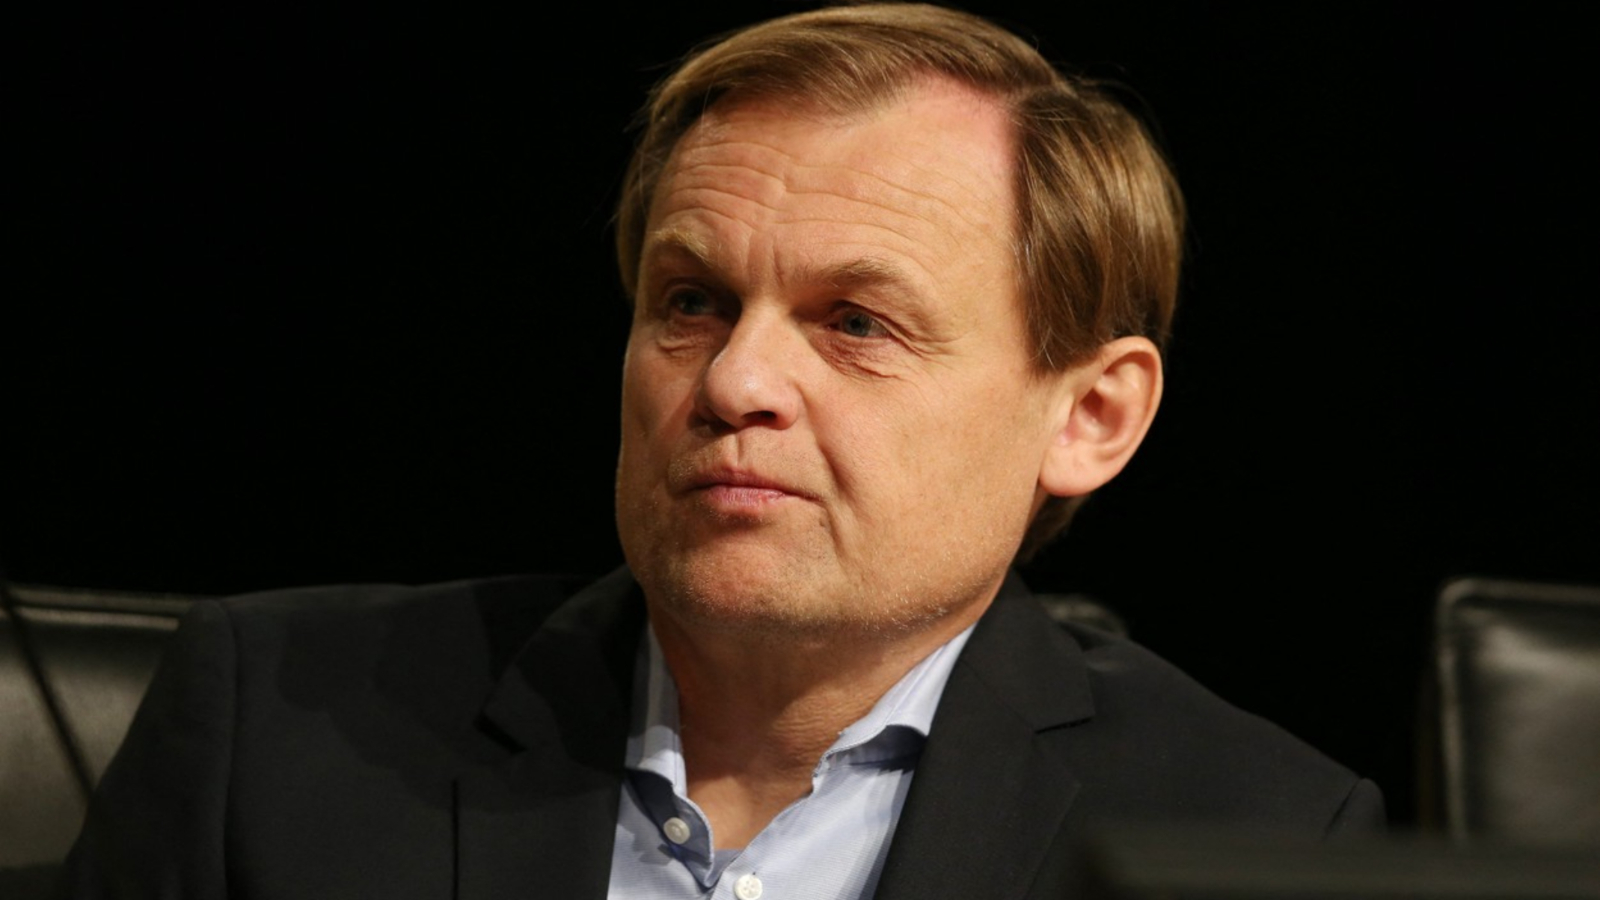 Izvršni direktor Pume Bjørn Gulden u pregovorima sa adidasom